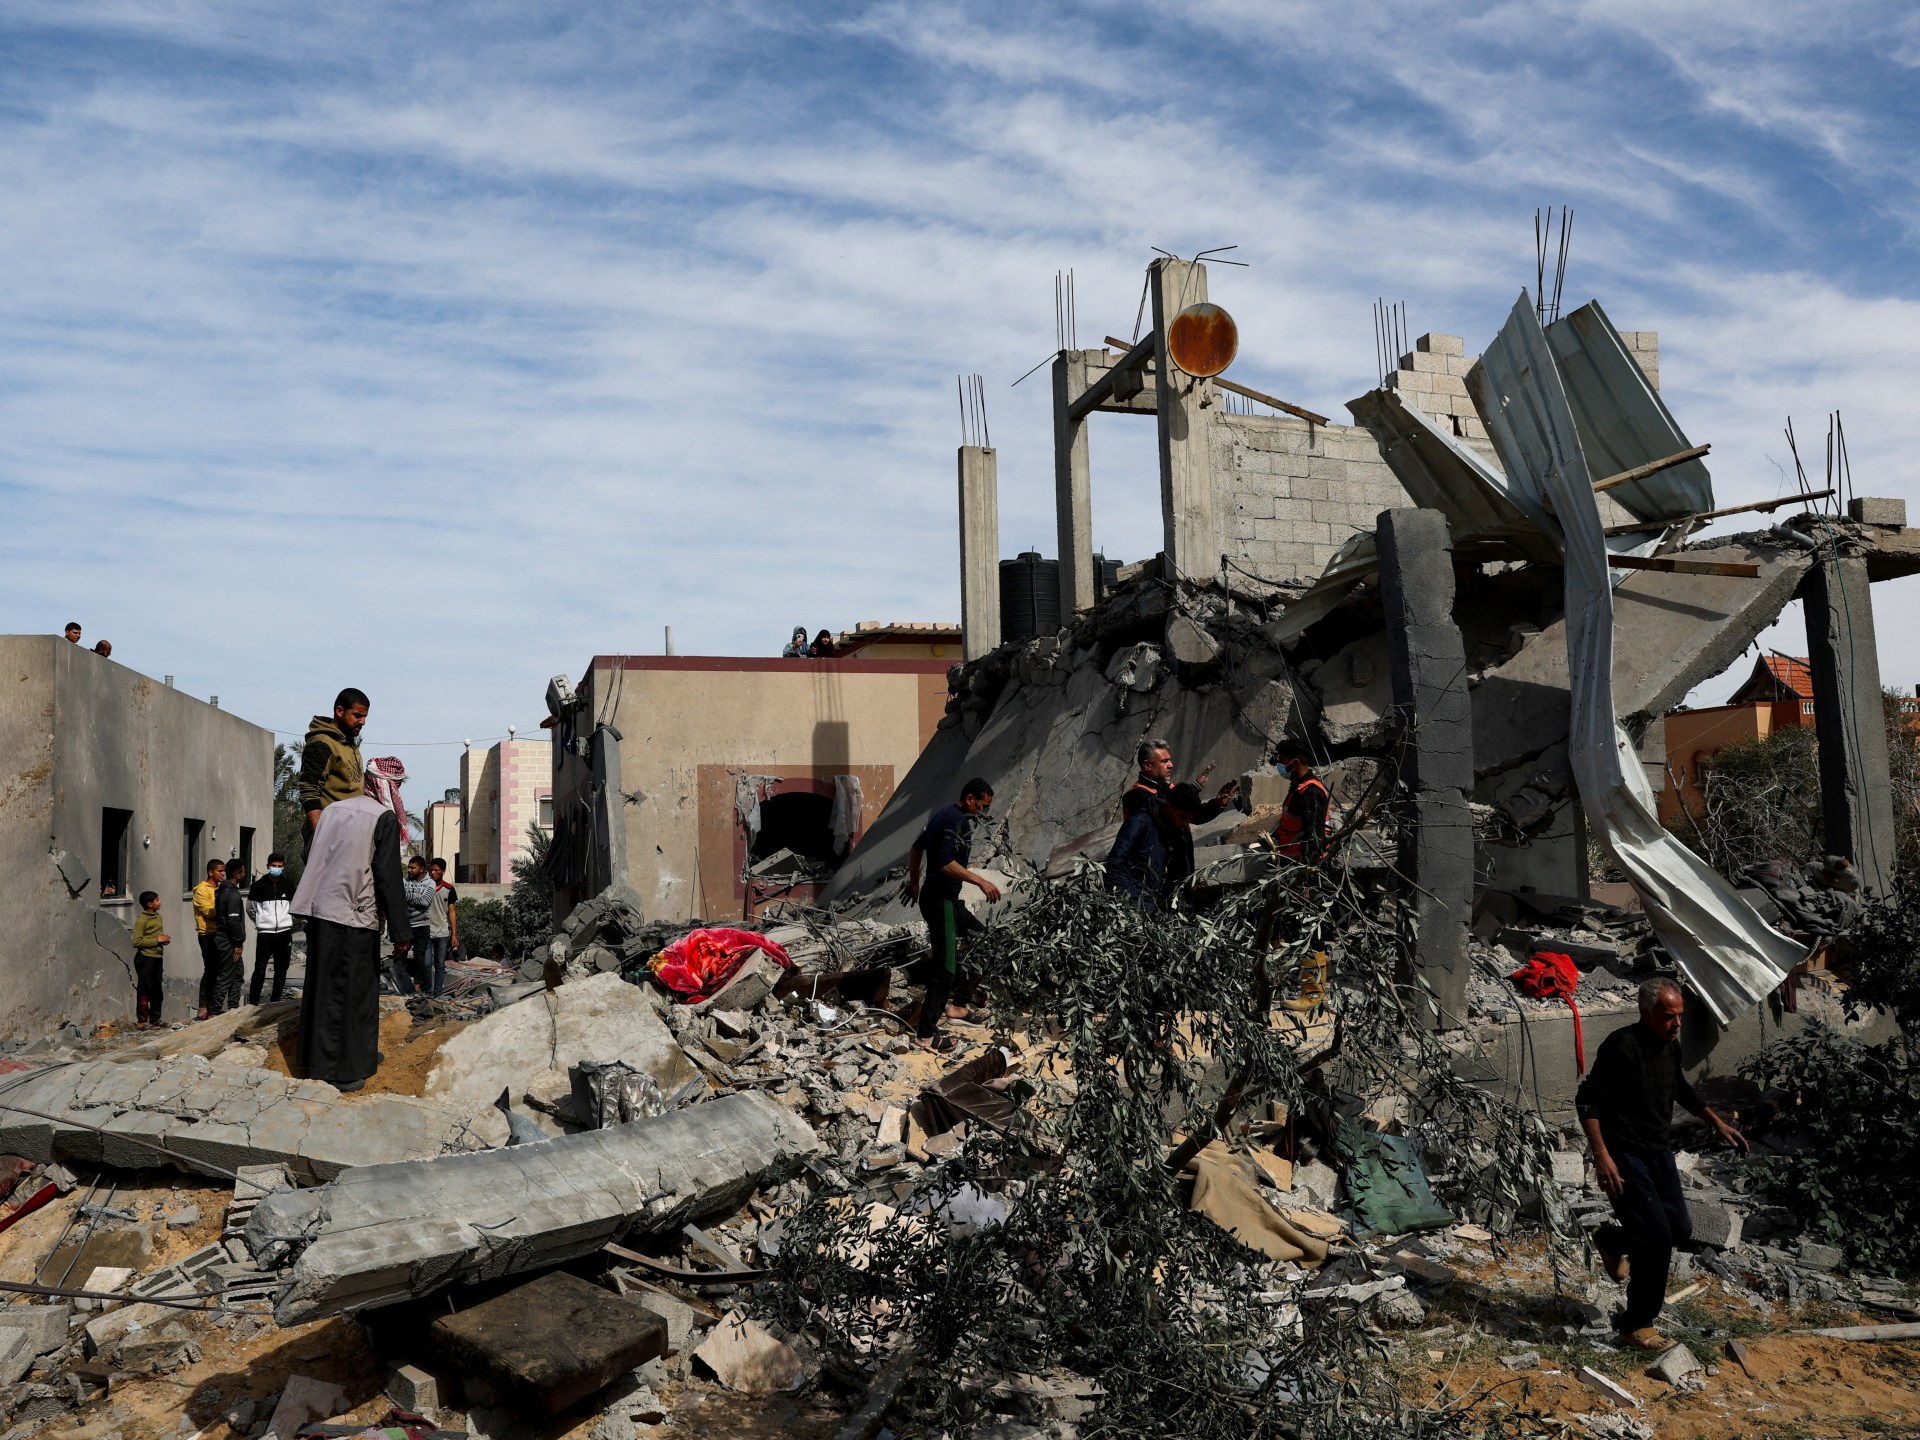 L'attacco aereo israeliano su Rafah uccide 14 palestinesi, molti dei quali bambini  Notizie della guerra israeliana a Gaza